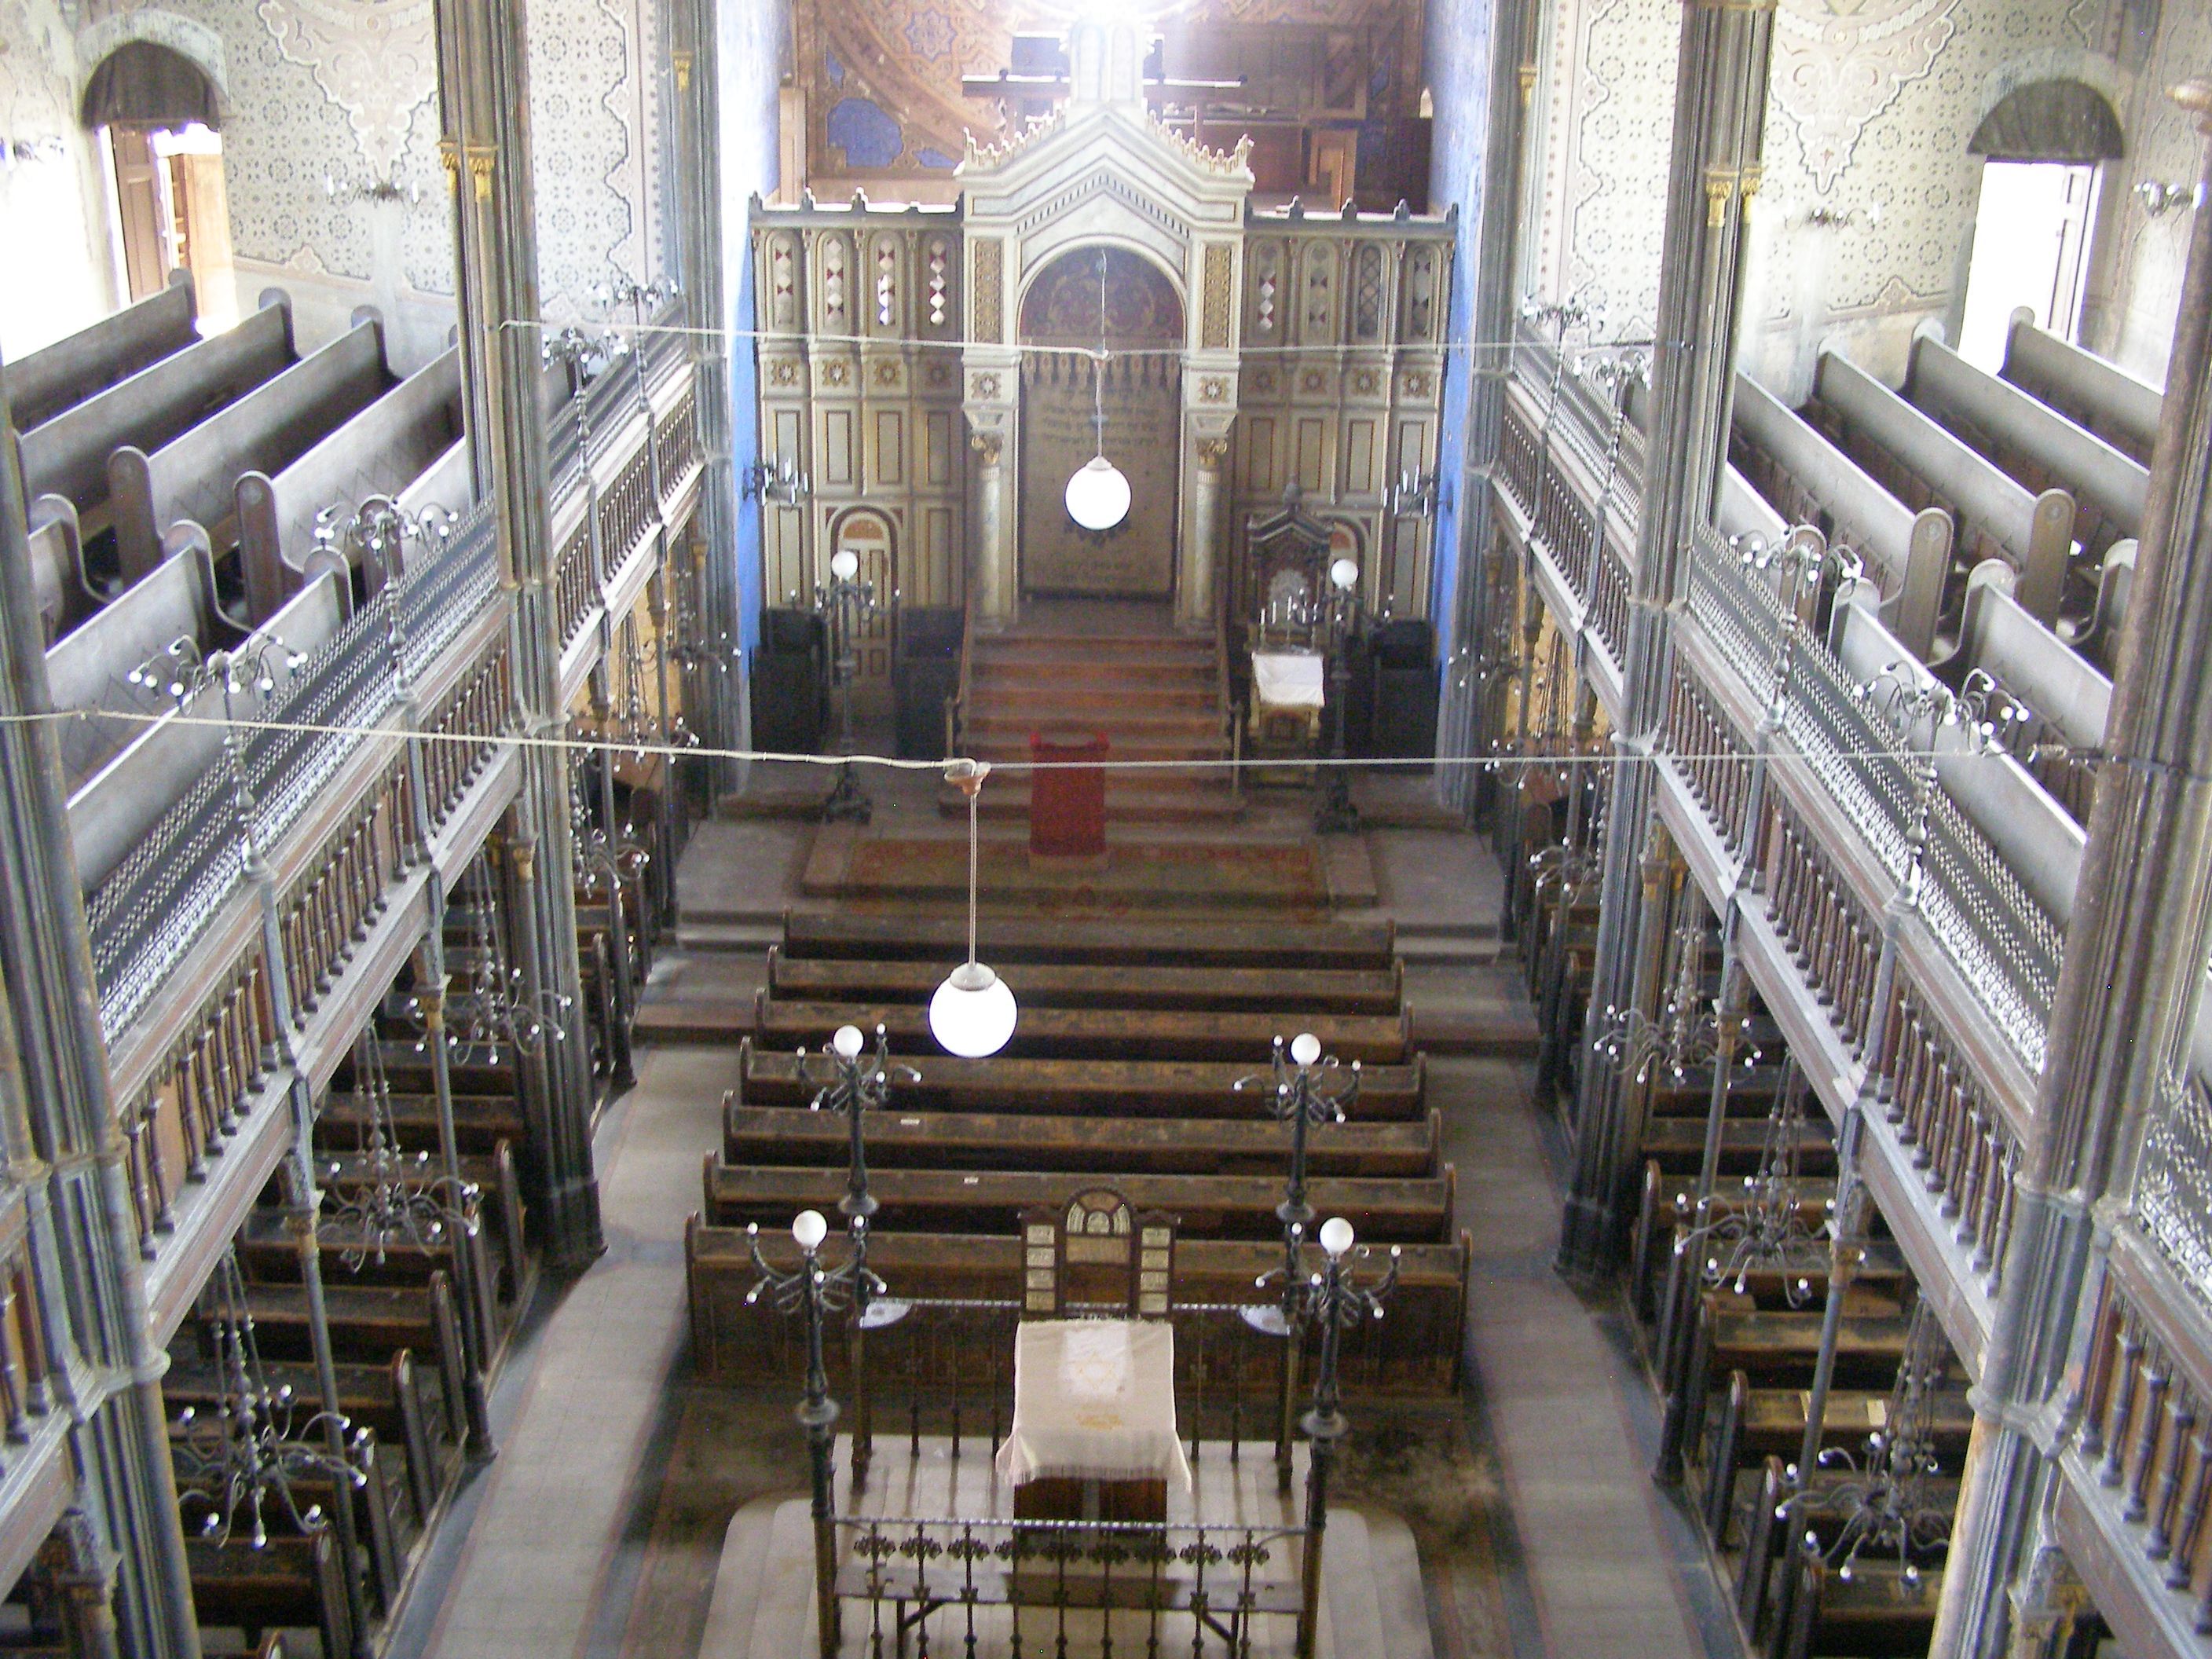 Miskolc Synagogue Interior